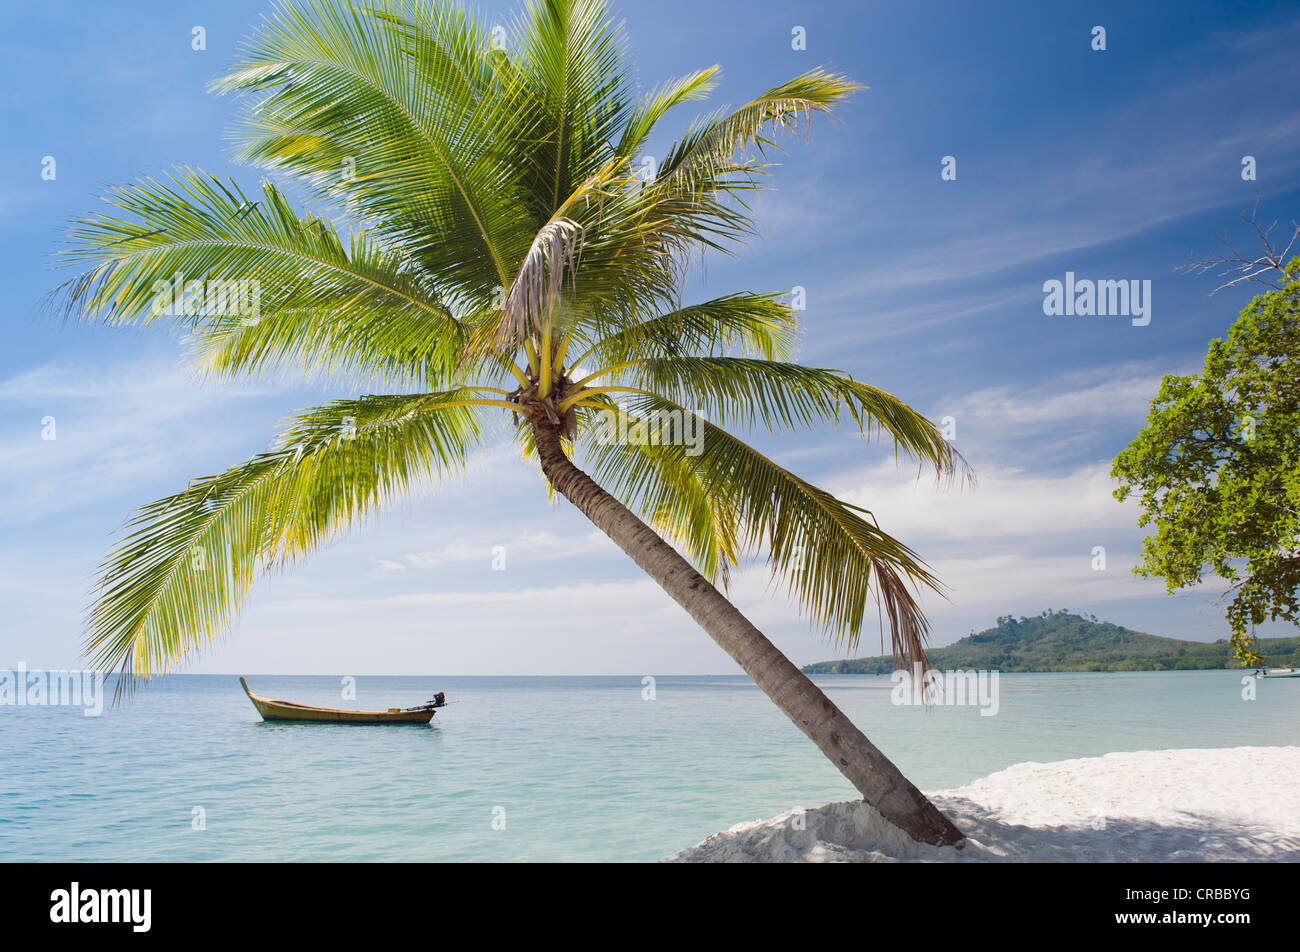 Palmier sur la plage, Ko Muk ou Ko Mook island, Thaïlande, Asie du Sud-Est Banque D'Images